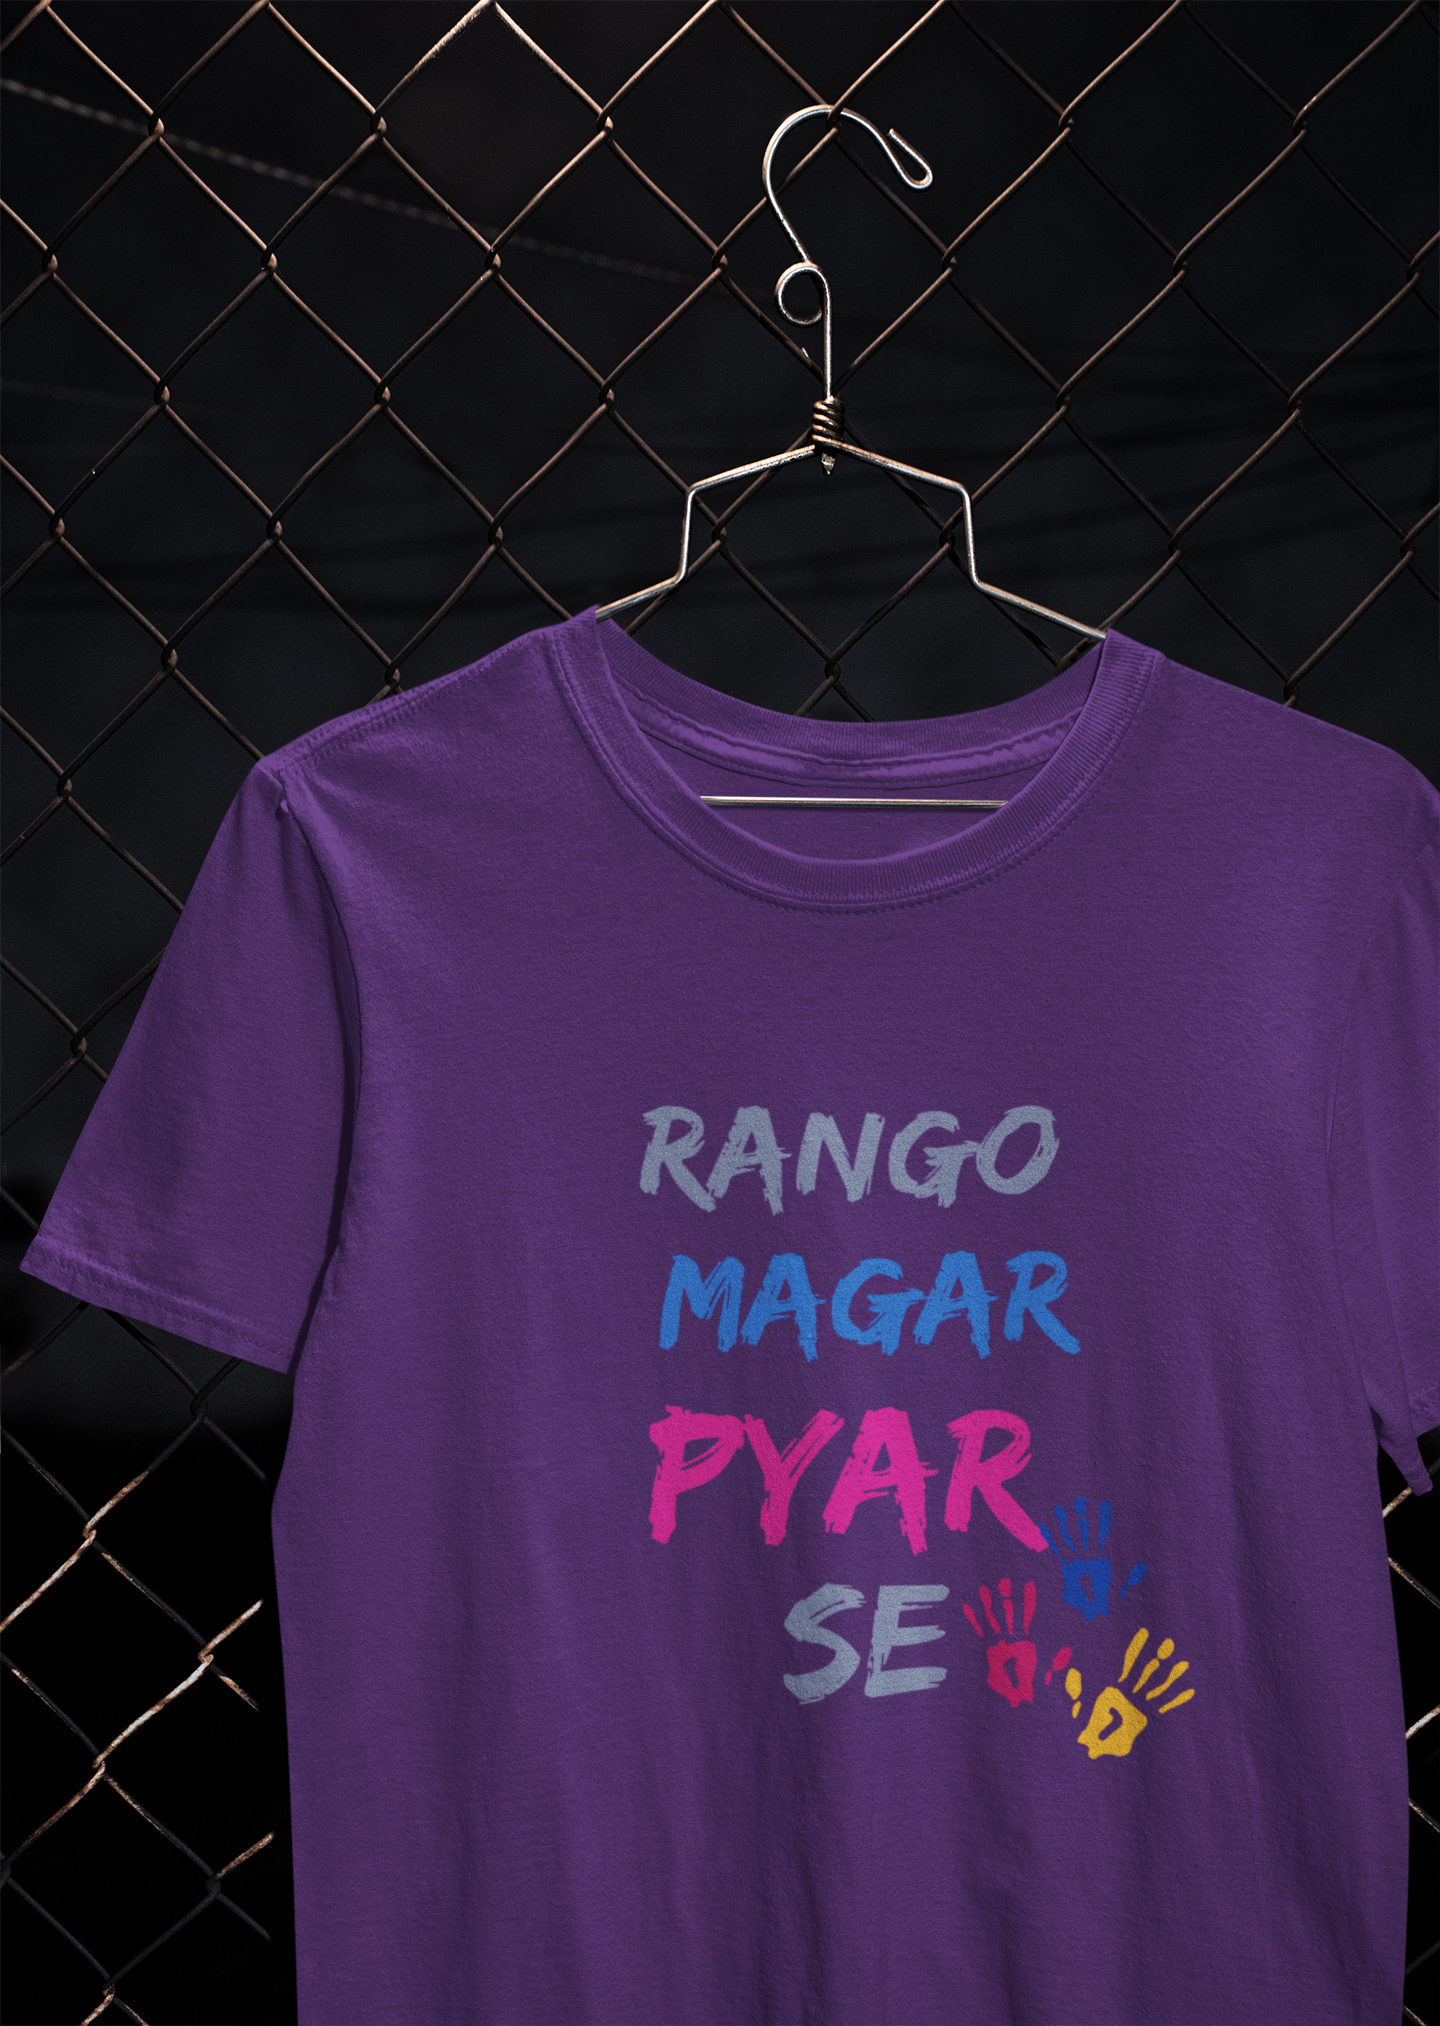 Rango Magar Pyaar Se Women Half Sleeves T-shirt- FunkyTeesClub